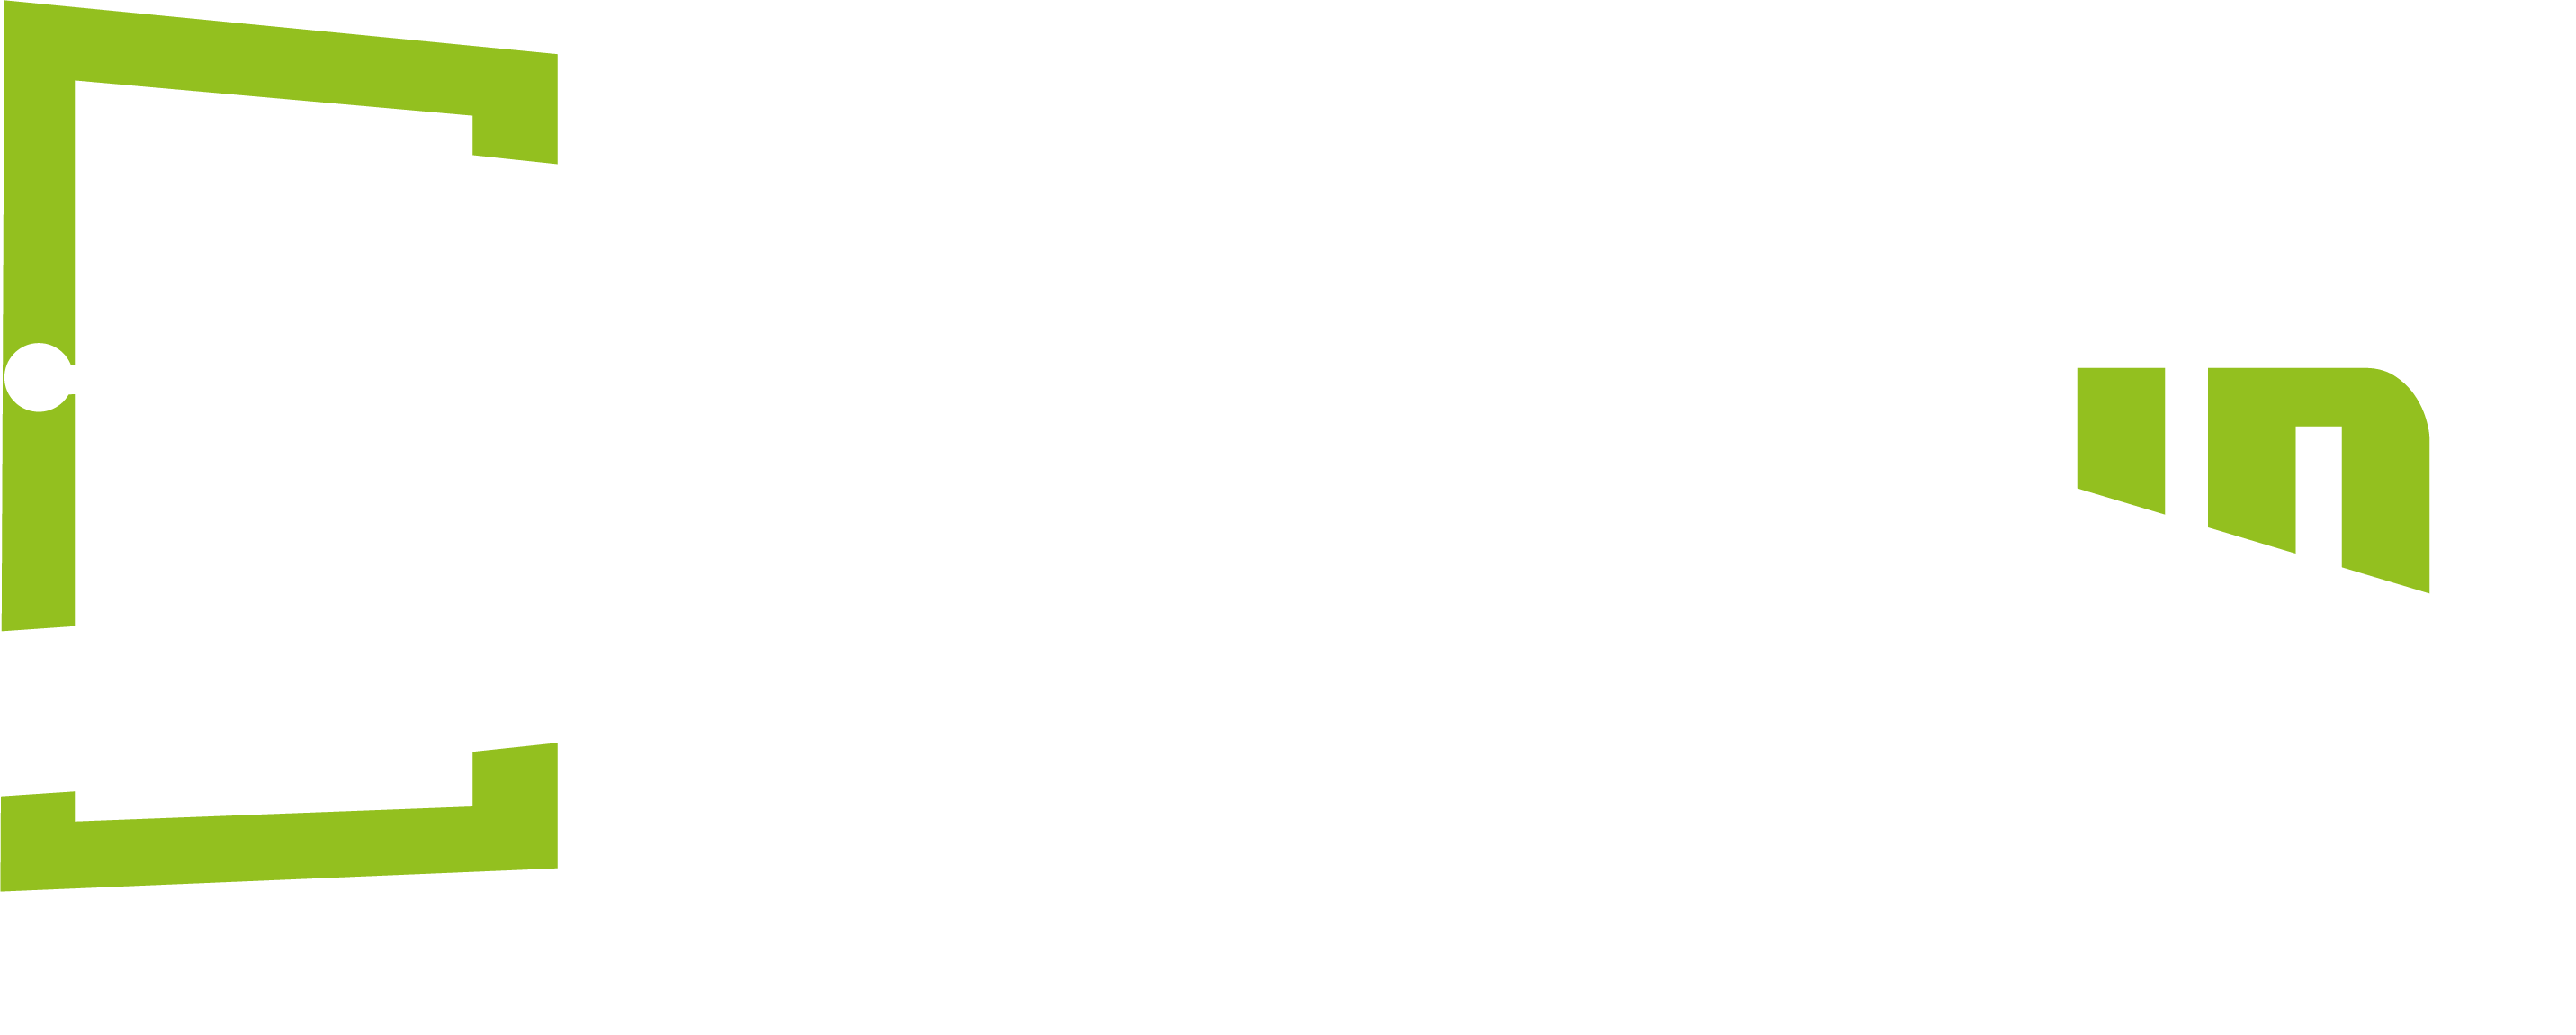 Speedwin